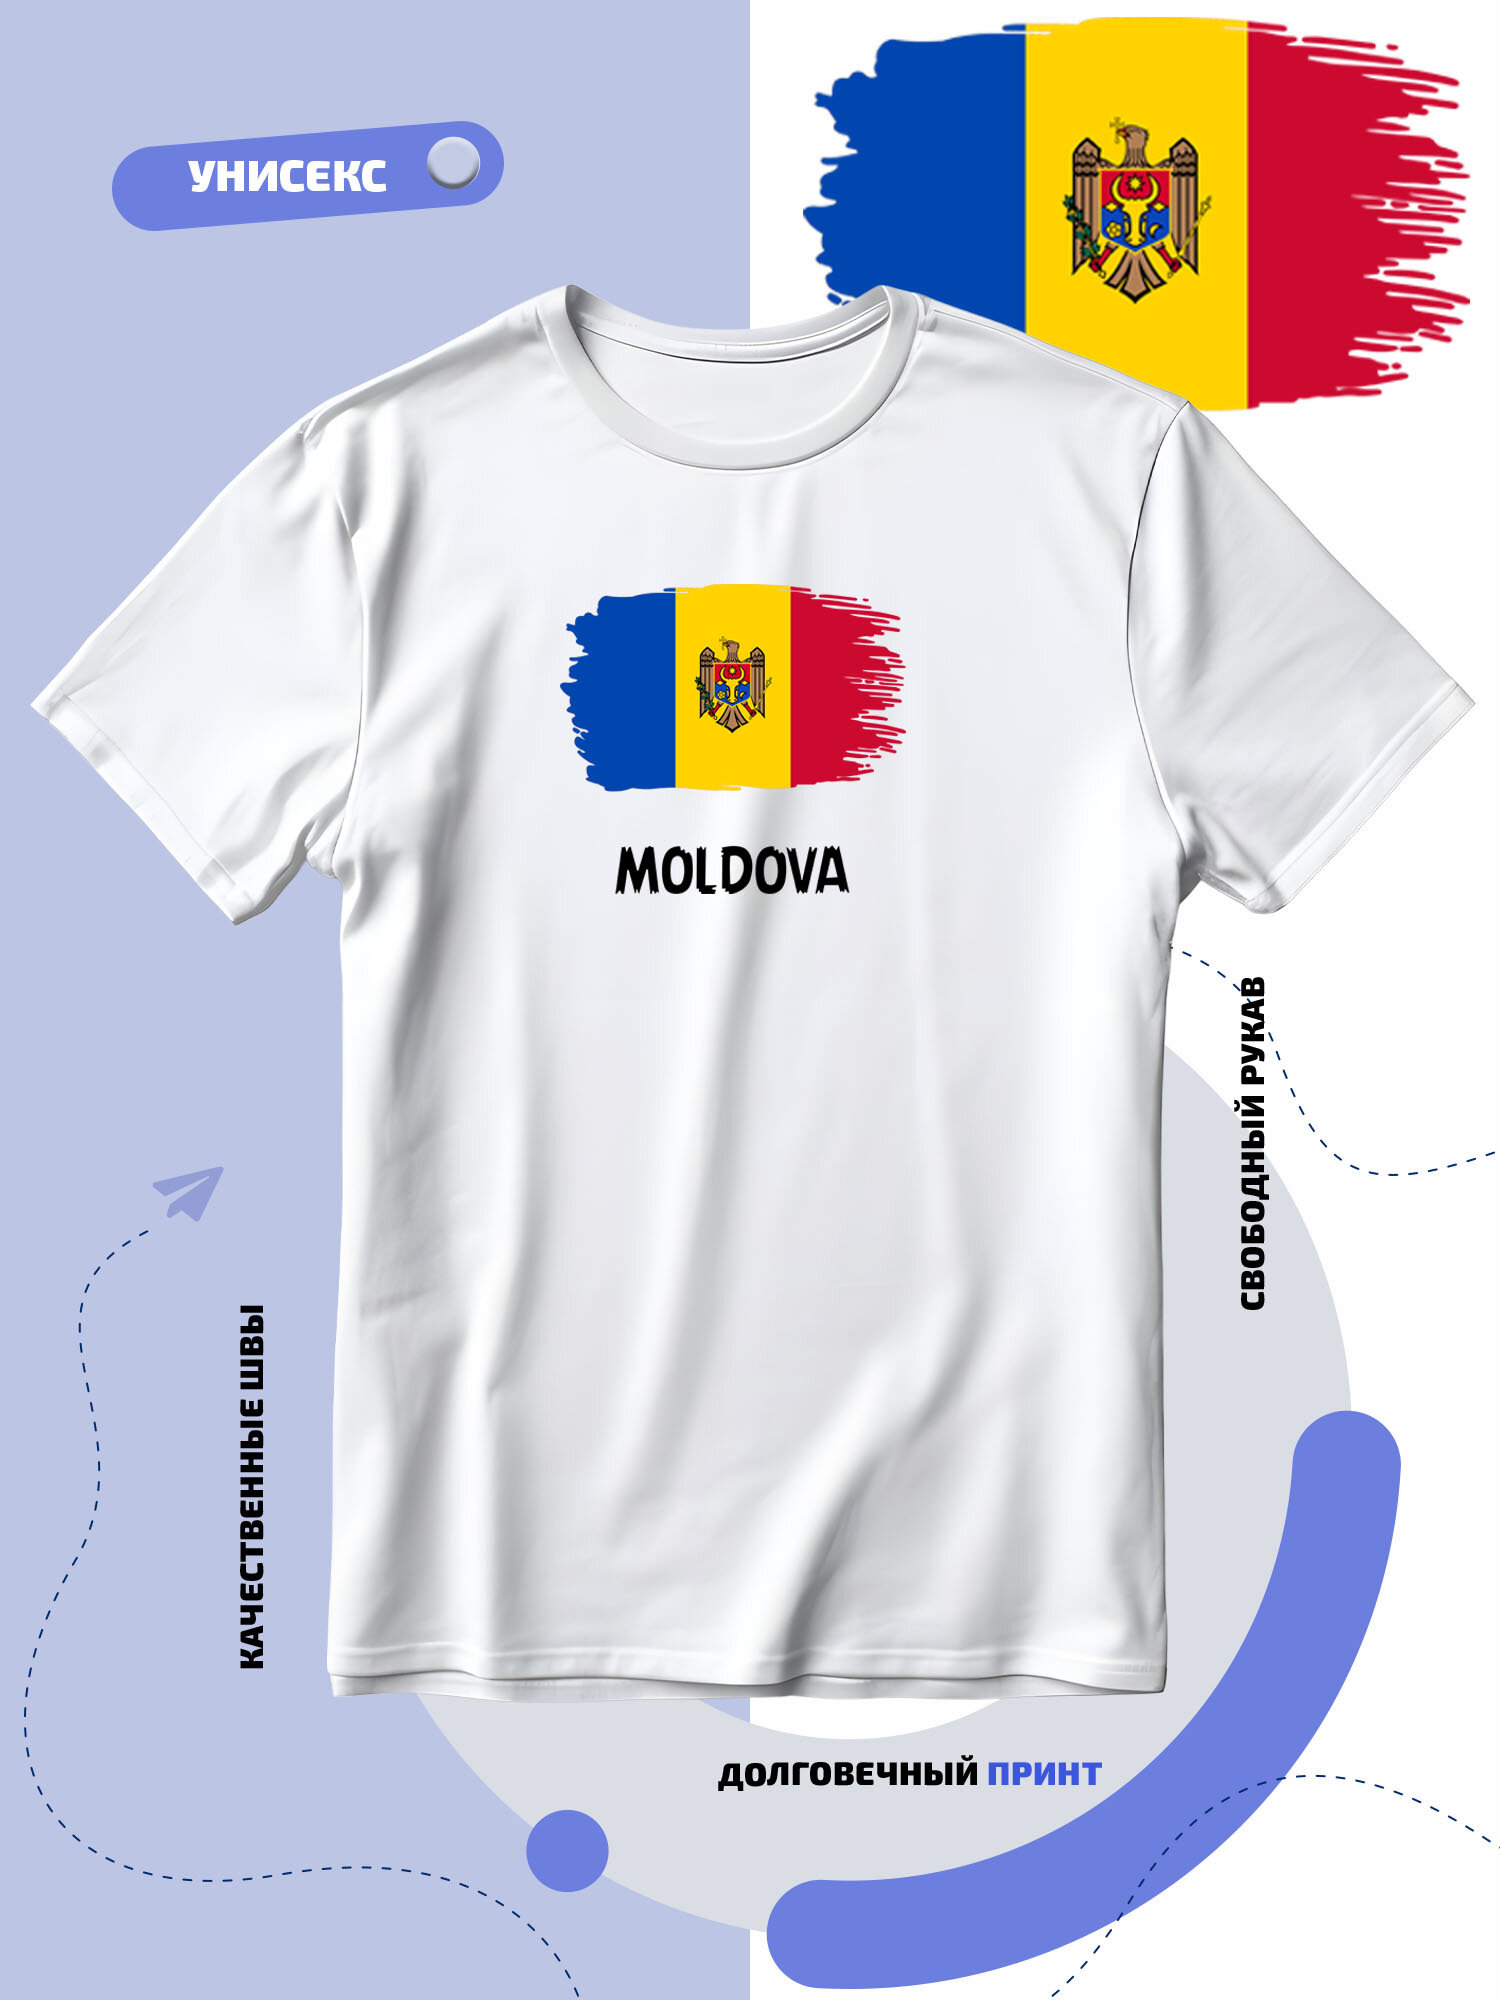 Футболка SMAIL-P с флагом Молдовы-Moldova